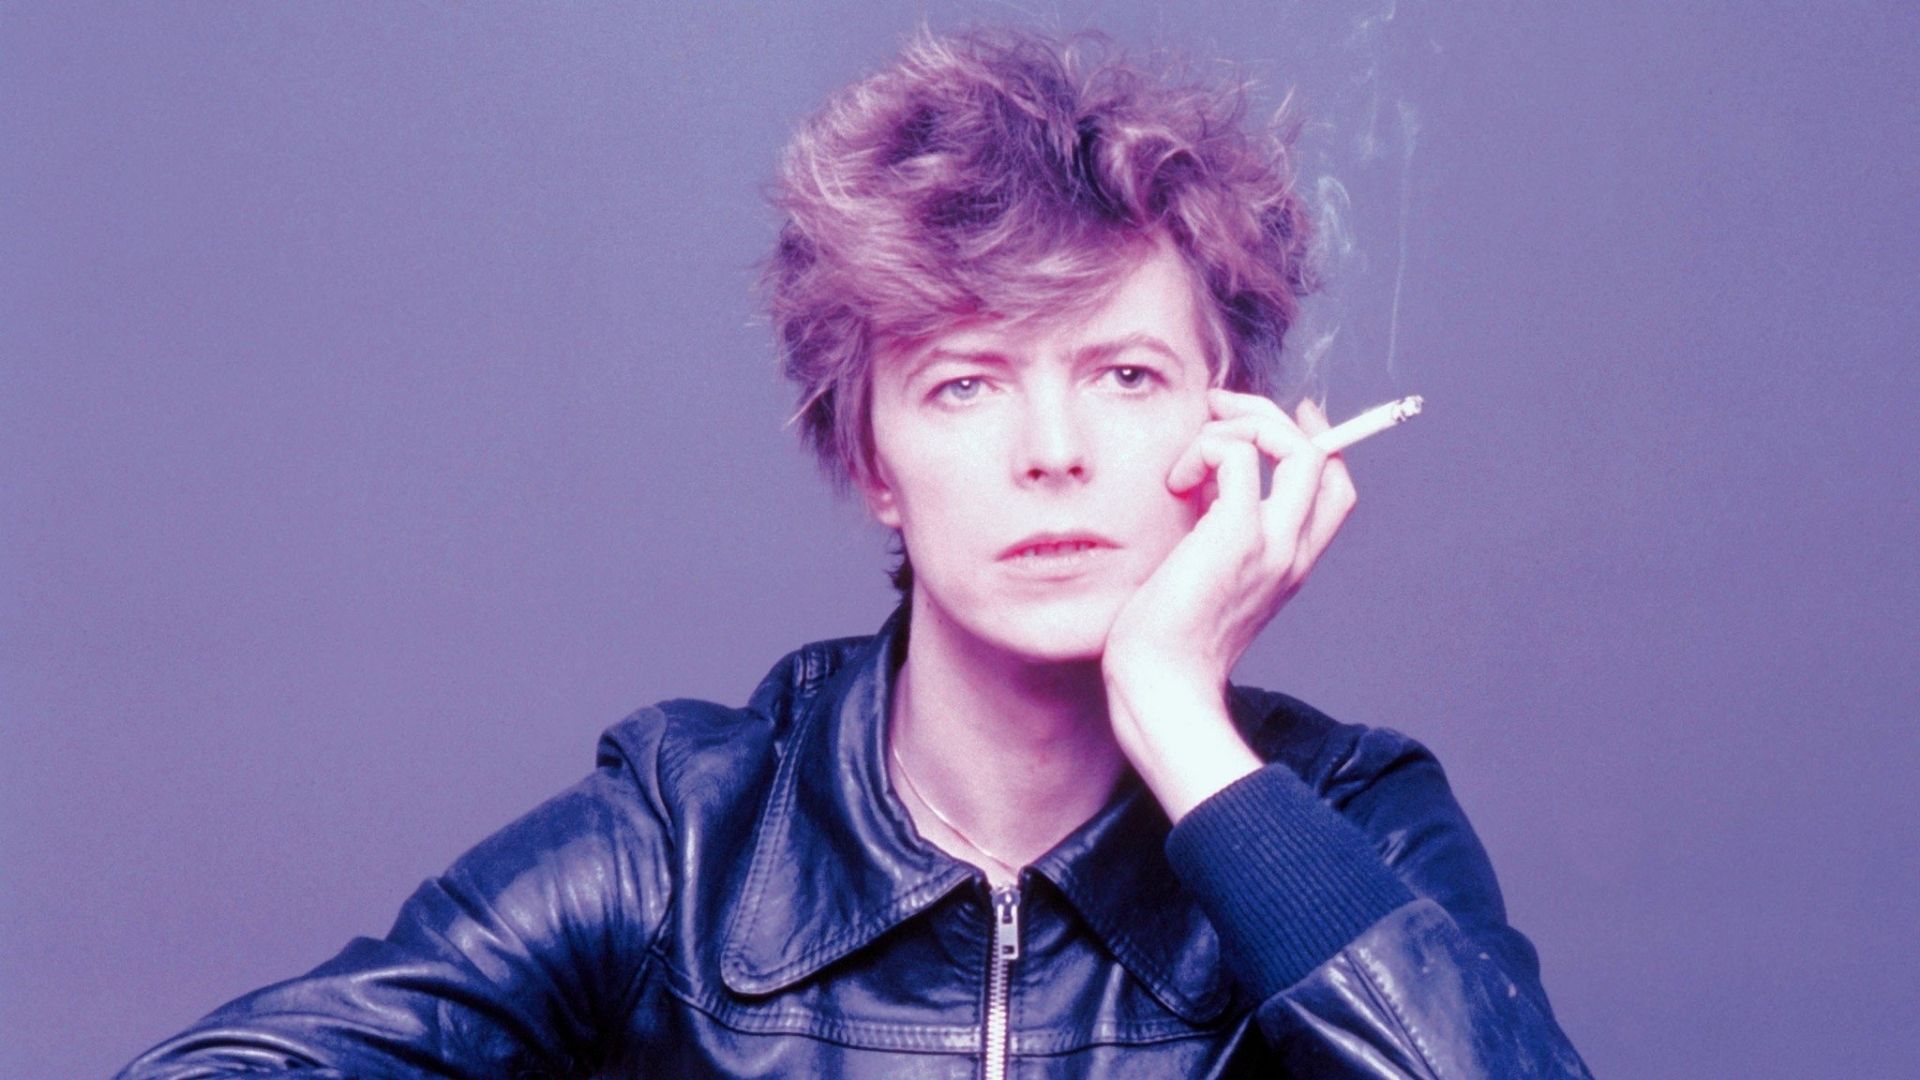 Warner Music compra el catálogo de canciones de David Bowie